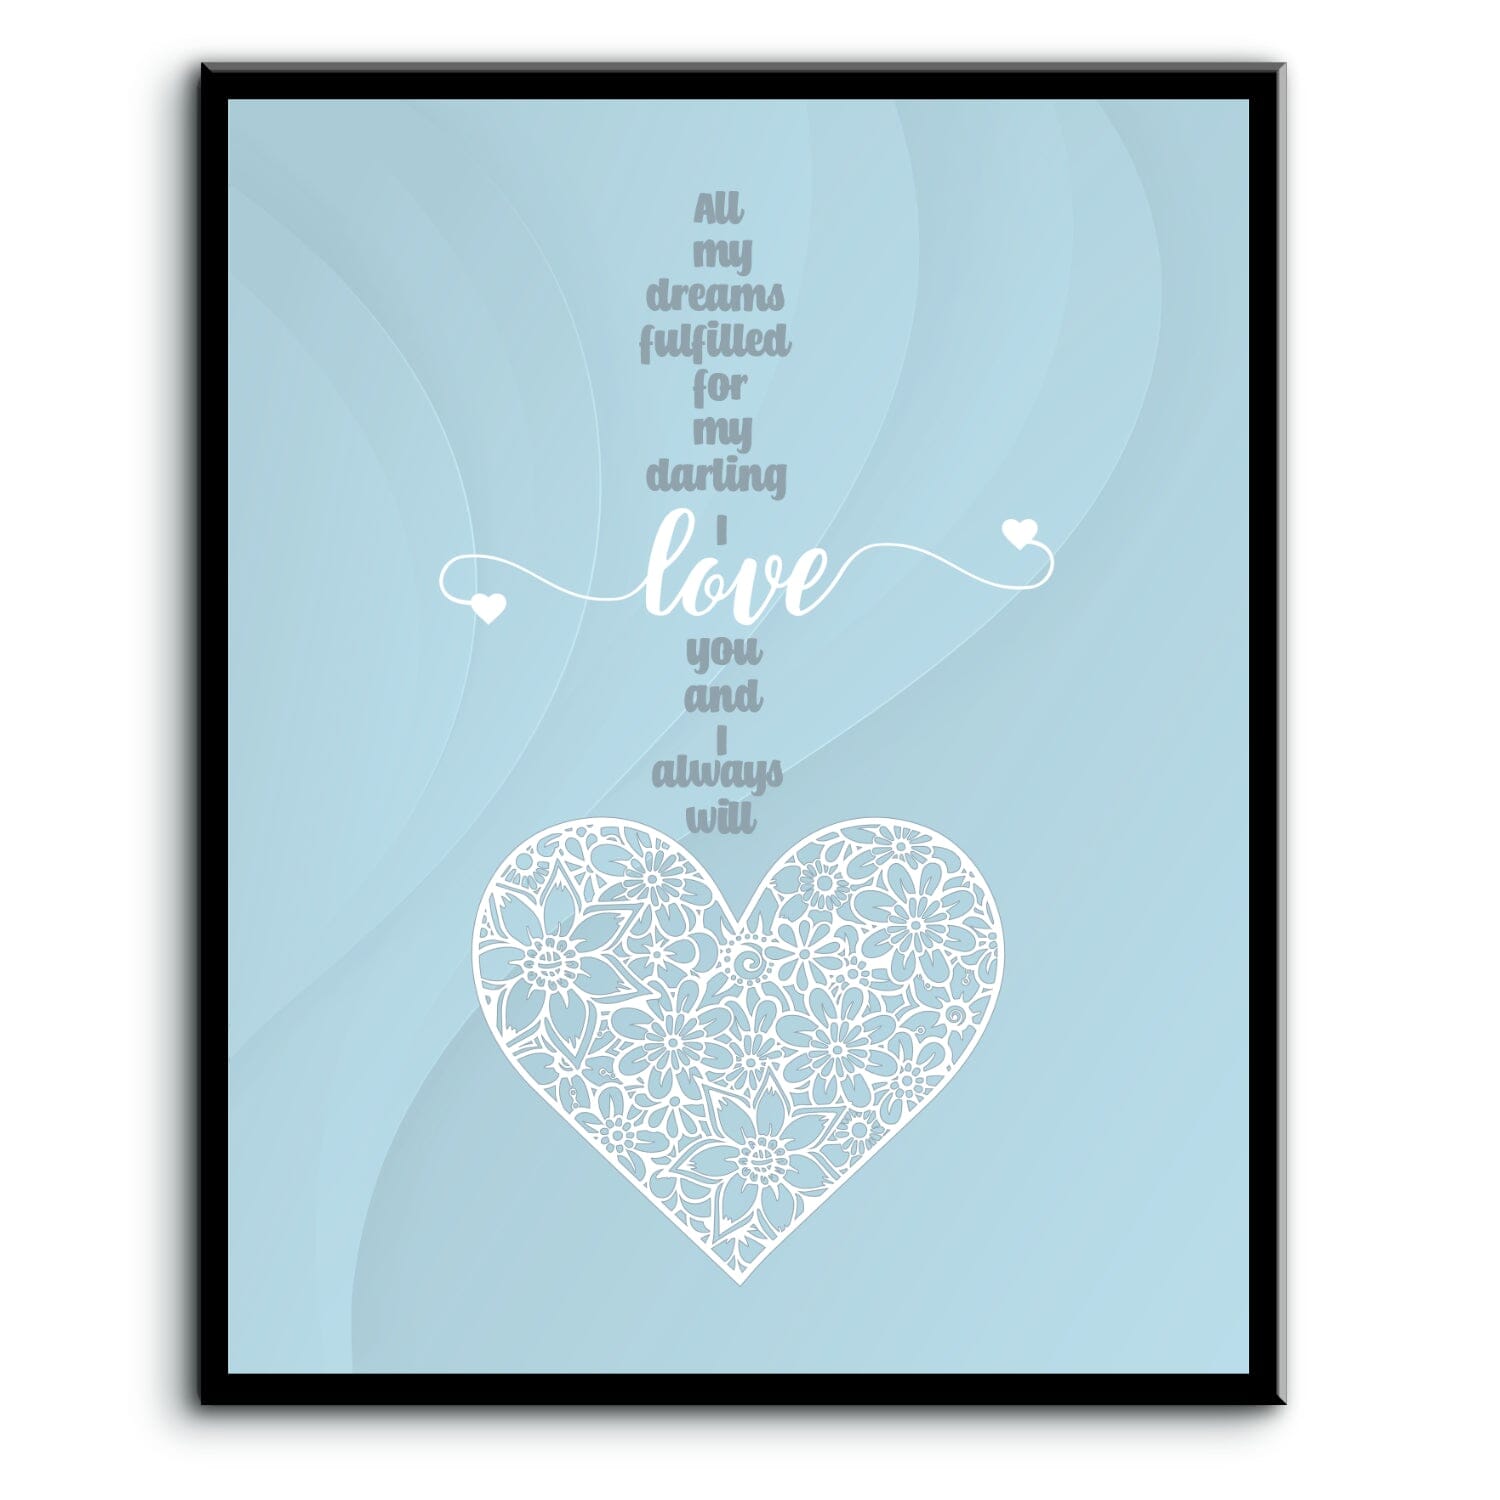 Love Me Tender by Elvis Presley - Wedding Song Lyric Print Song Lyrics Art Song Lyrics Art 8x10 Plaque Mount 